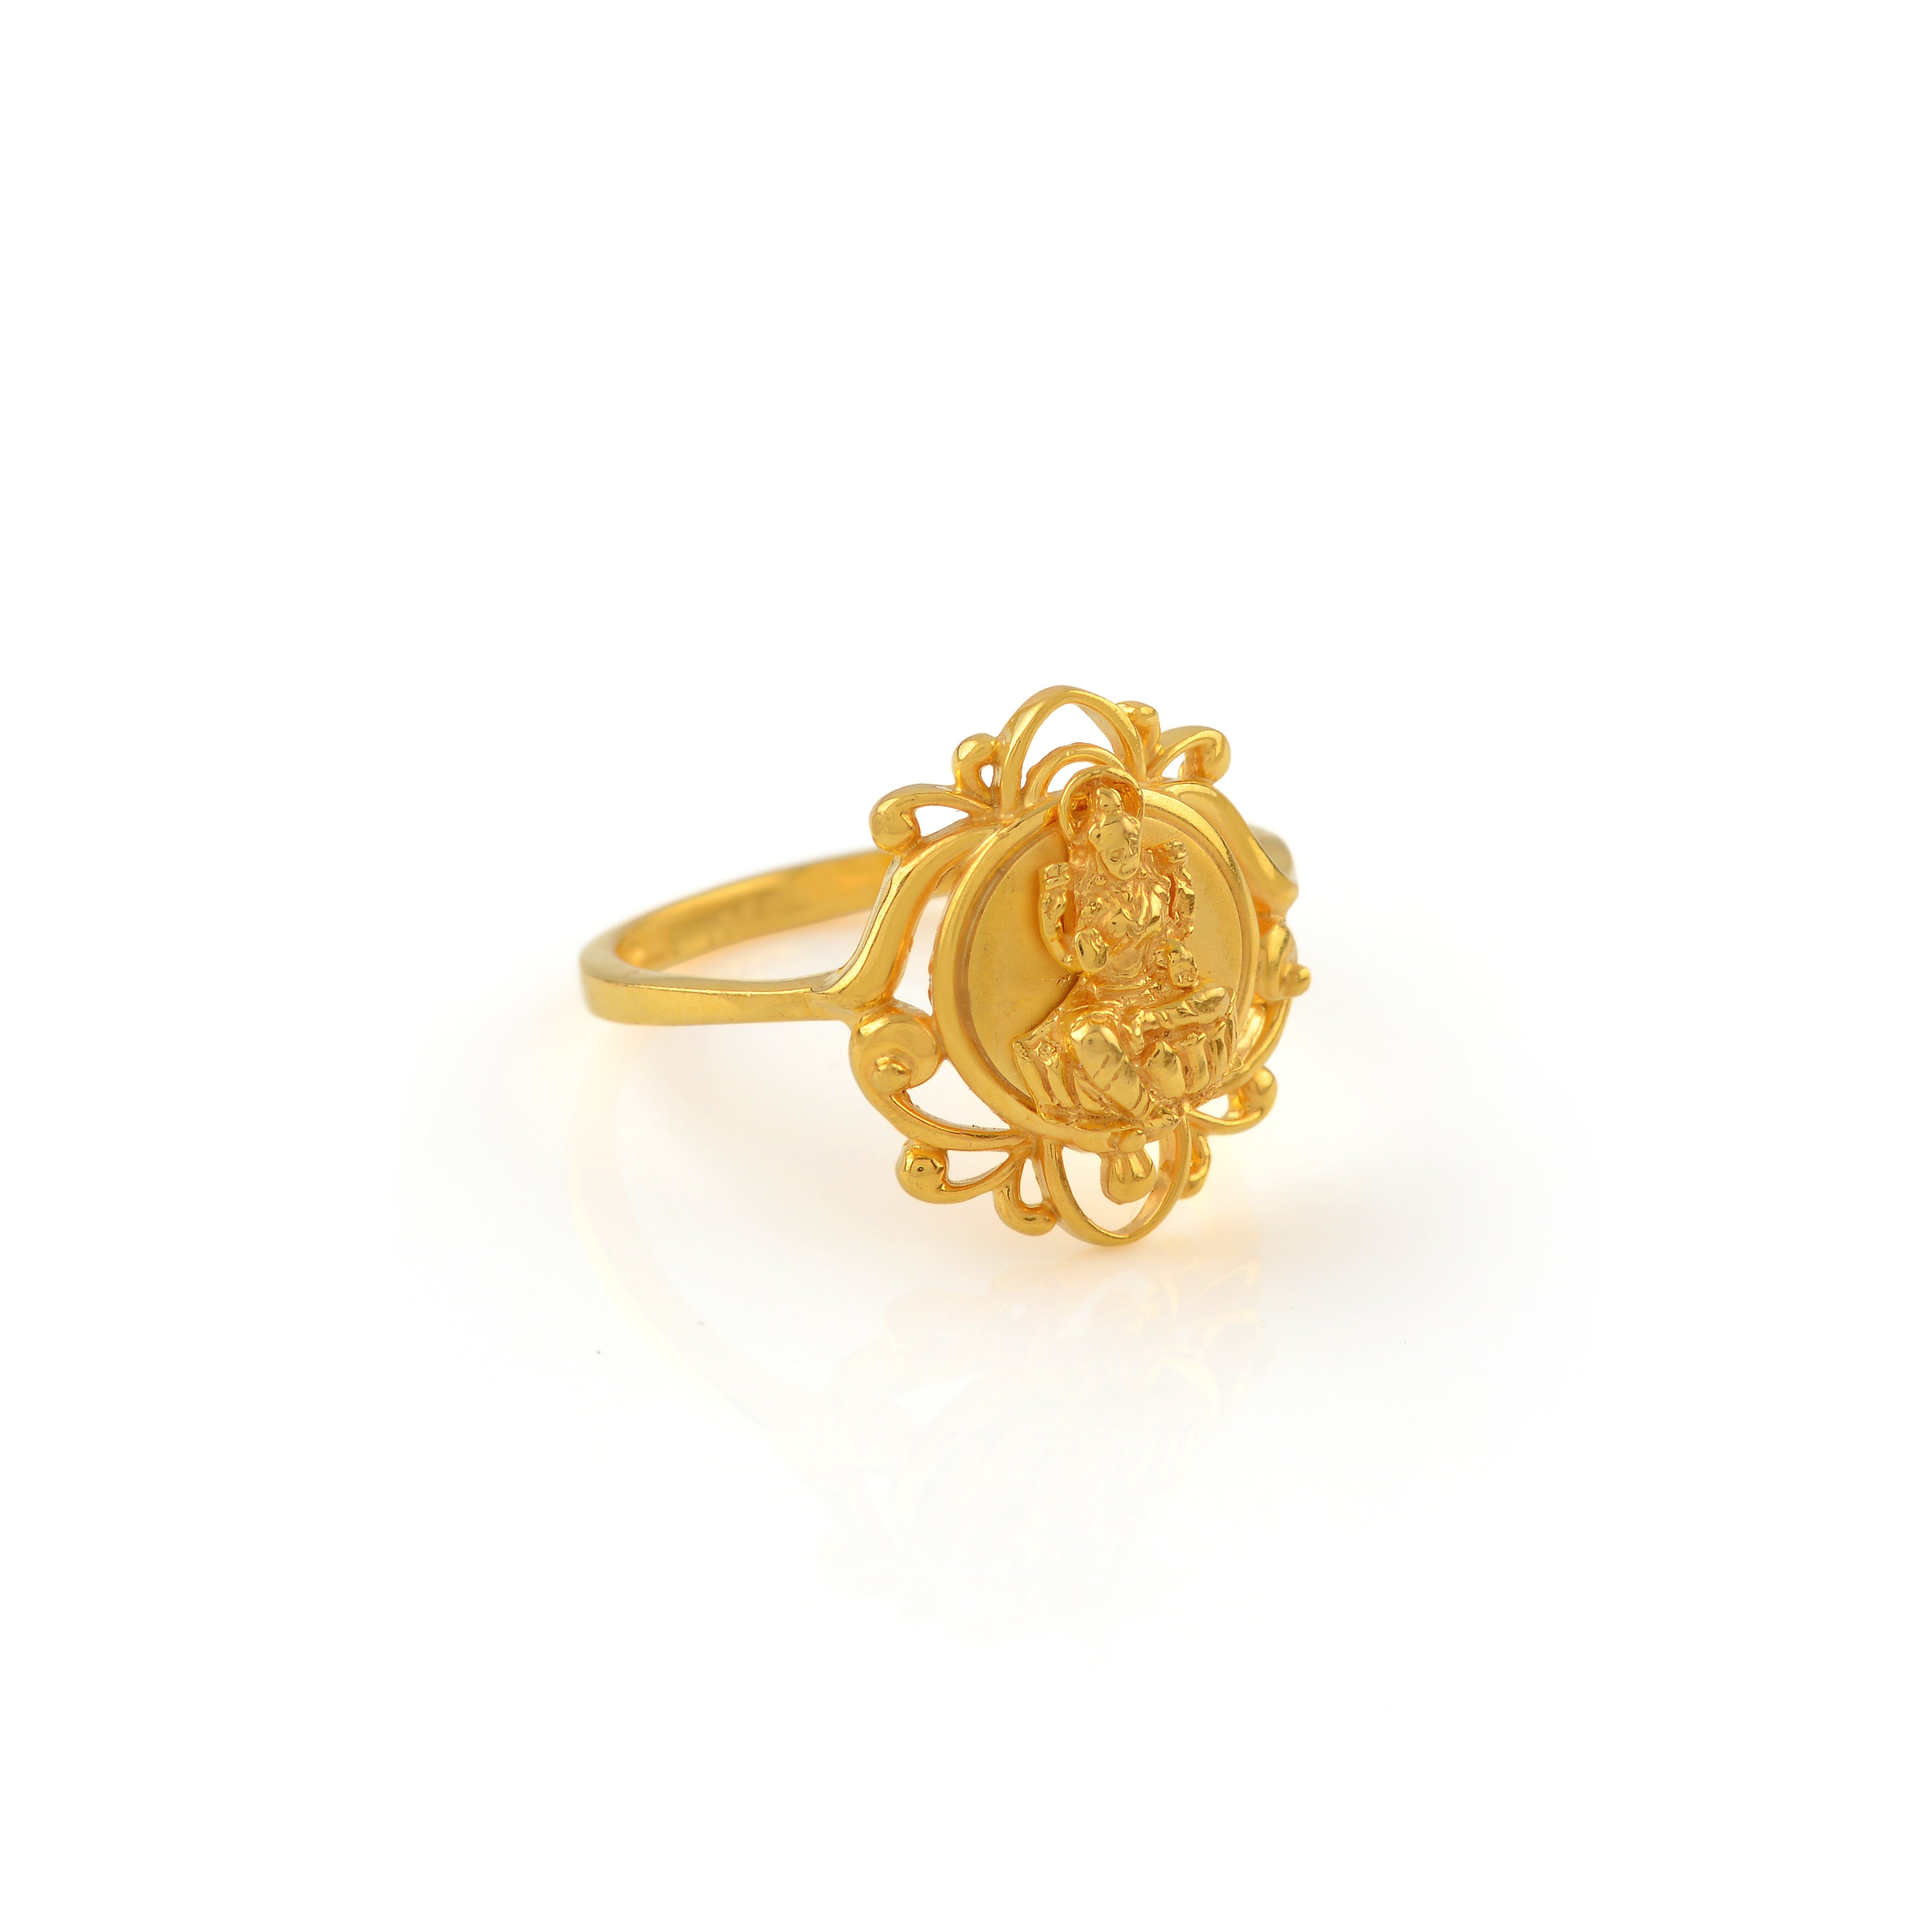 Latest Gold Rings designs | Gold Finger Rings designs | Today Fashion -  YouTube | Gold finger rings, Gold ring designs, Latest gold ring designs